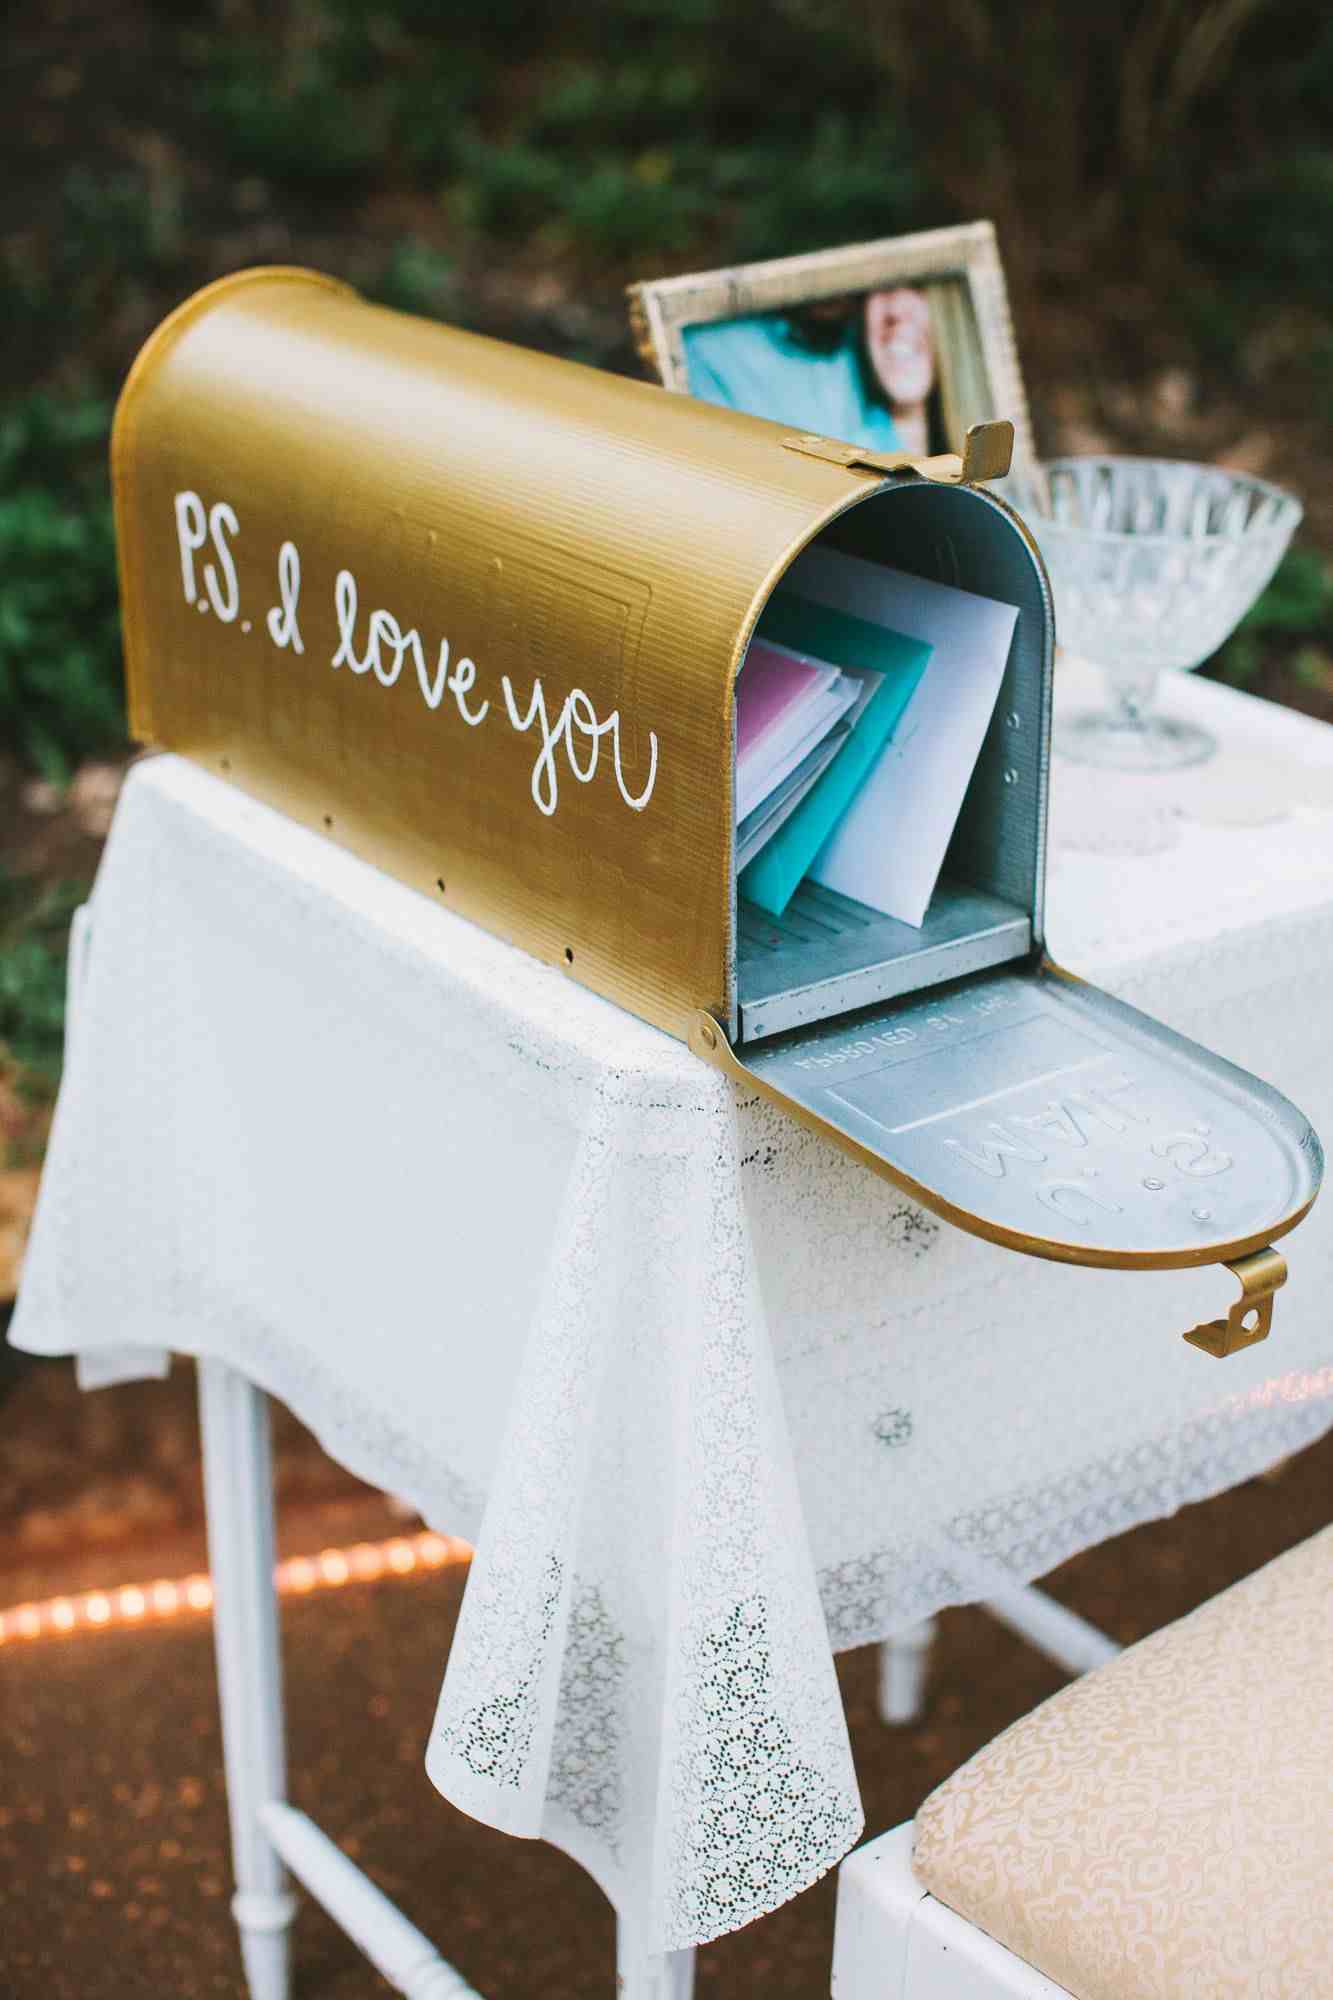 سجل الزوار زفاف بطاقات بريدية بديلة صندوق بريد زفاف رومانسي في الحديقة